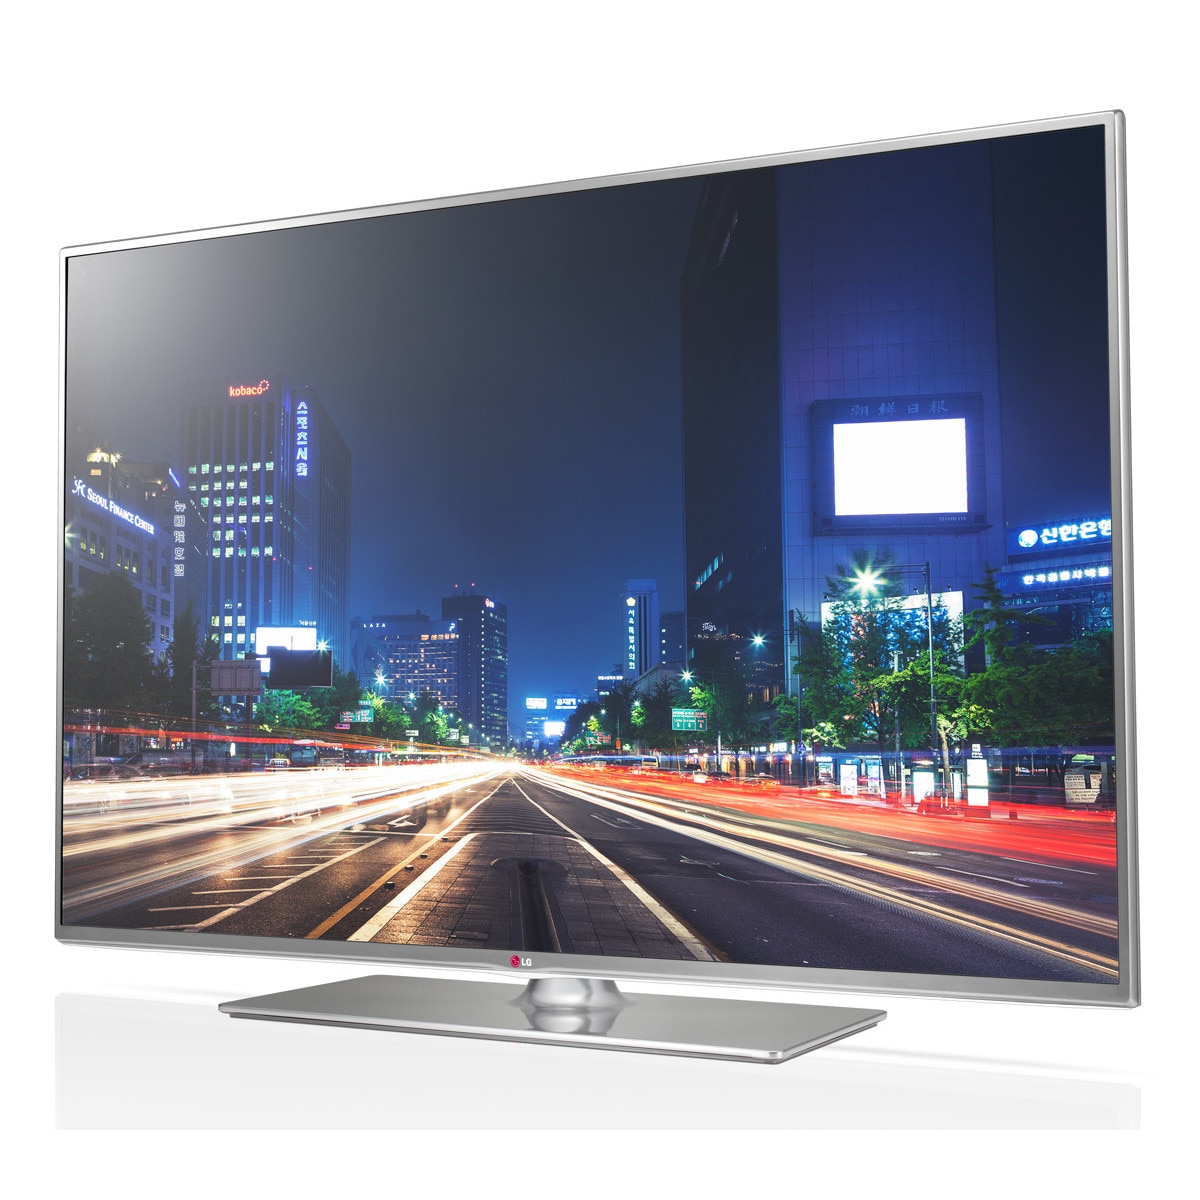 Телевизор lg lb. LG 42lb650v. Телевизор LG 42lb650v. LG 55 lb 650 v-ze. LG TV 47lb650v.